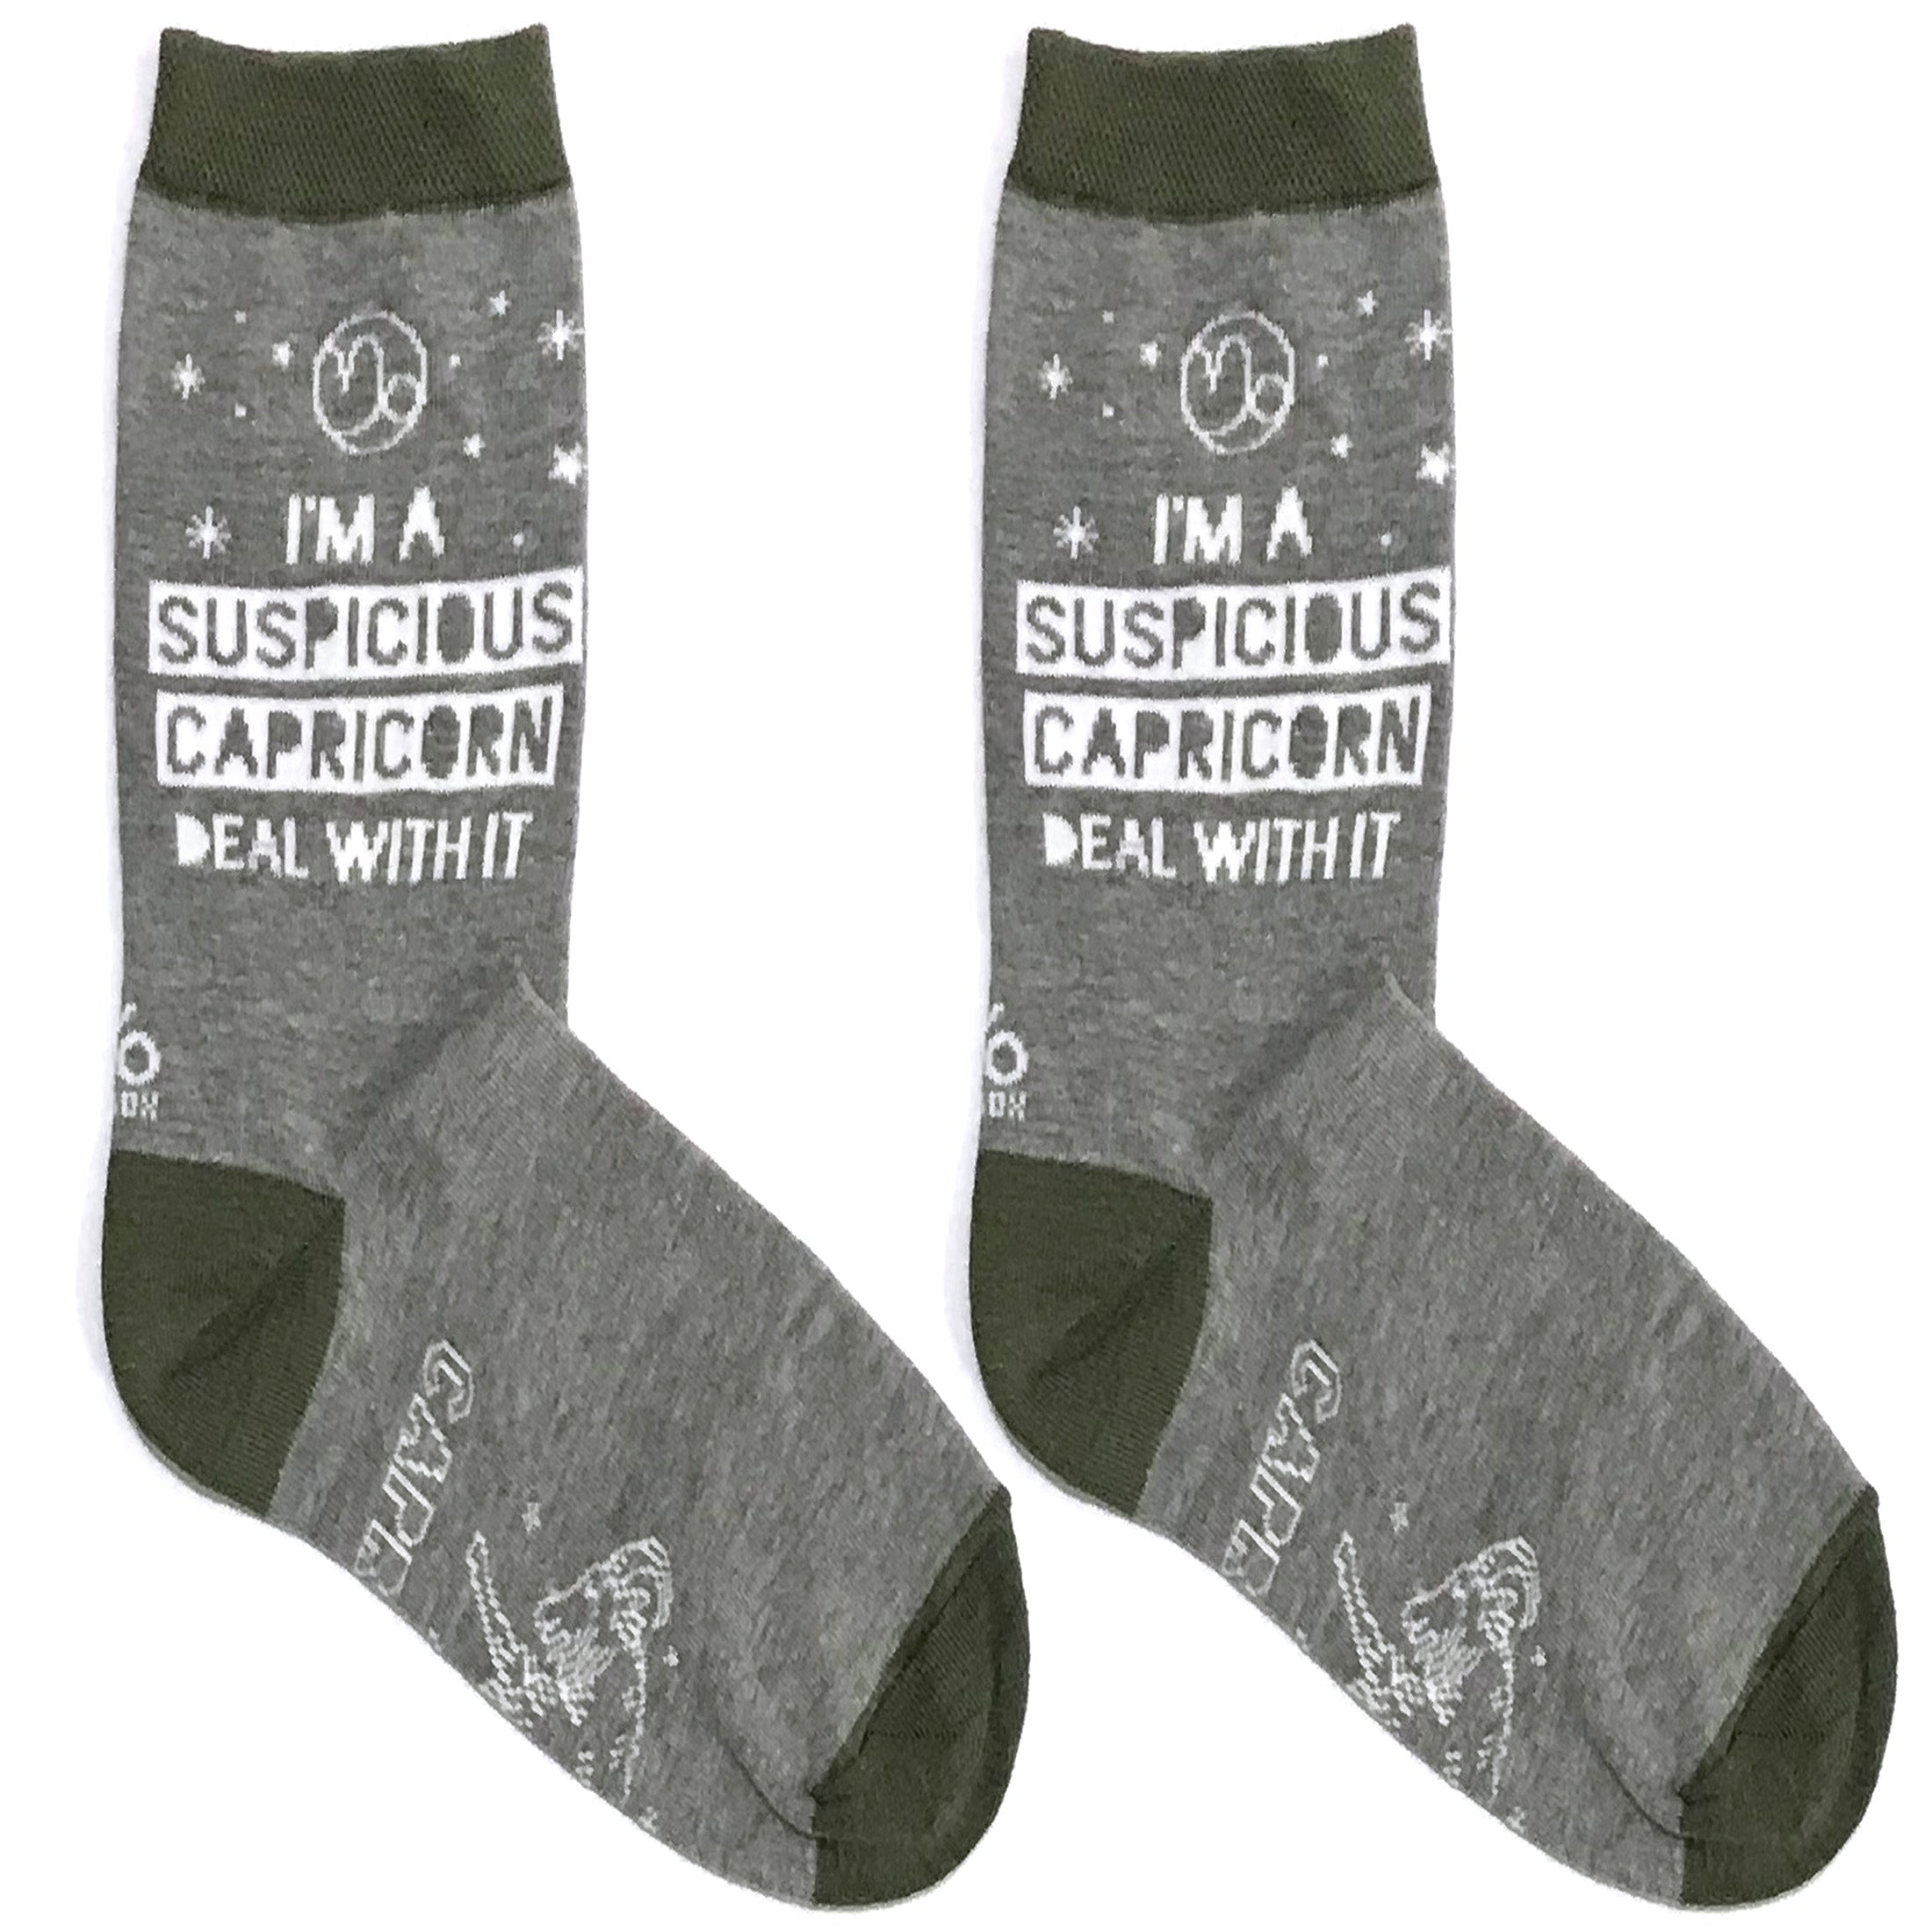 Suspicious Capricorn Short Crew Socks